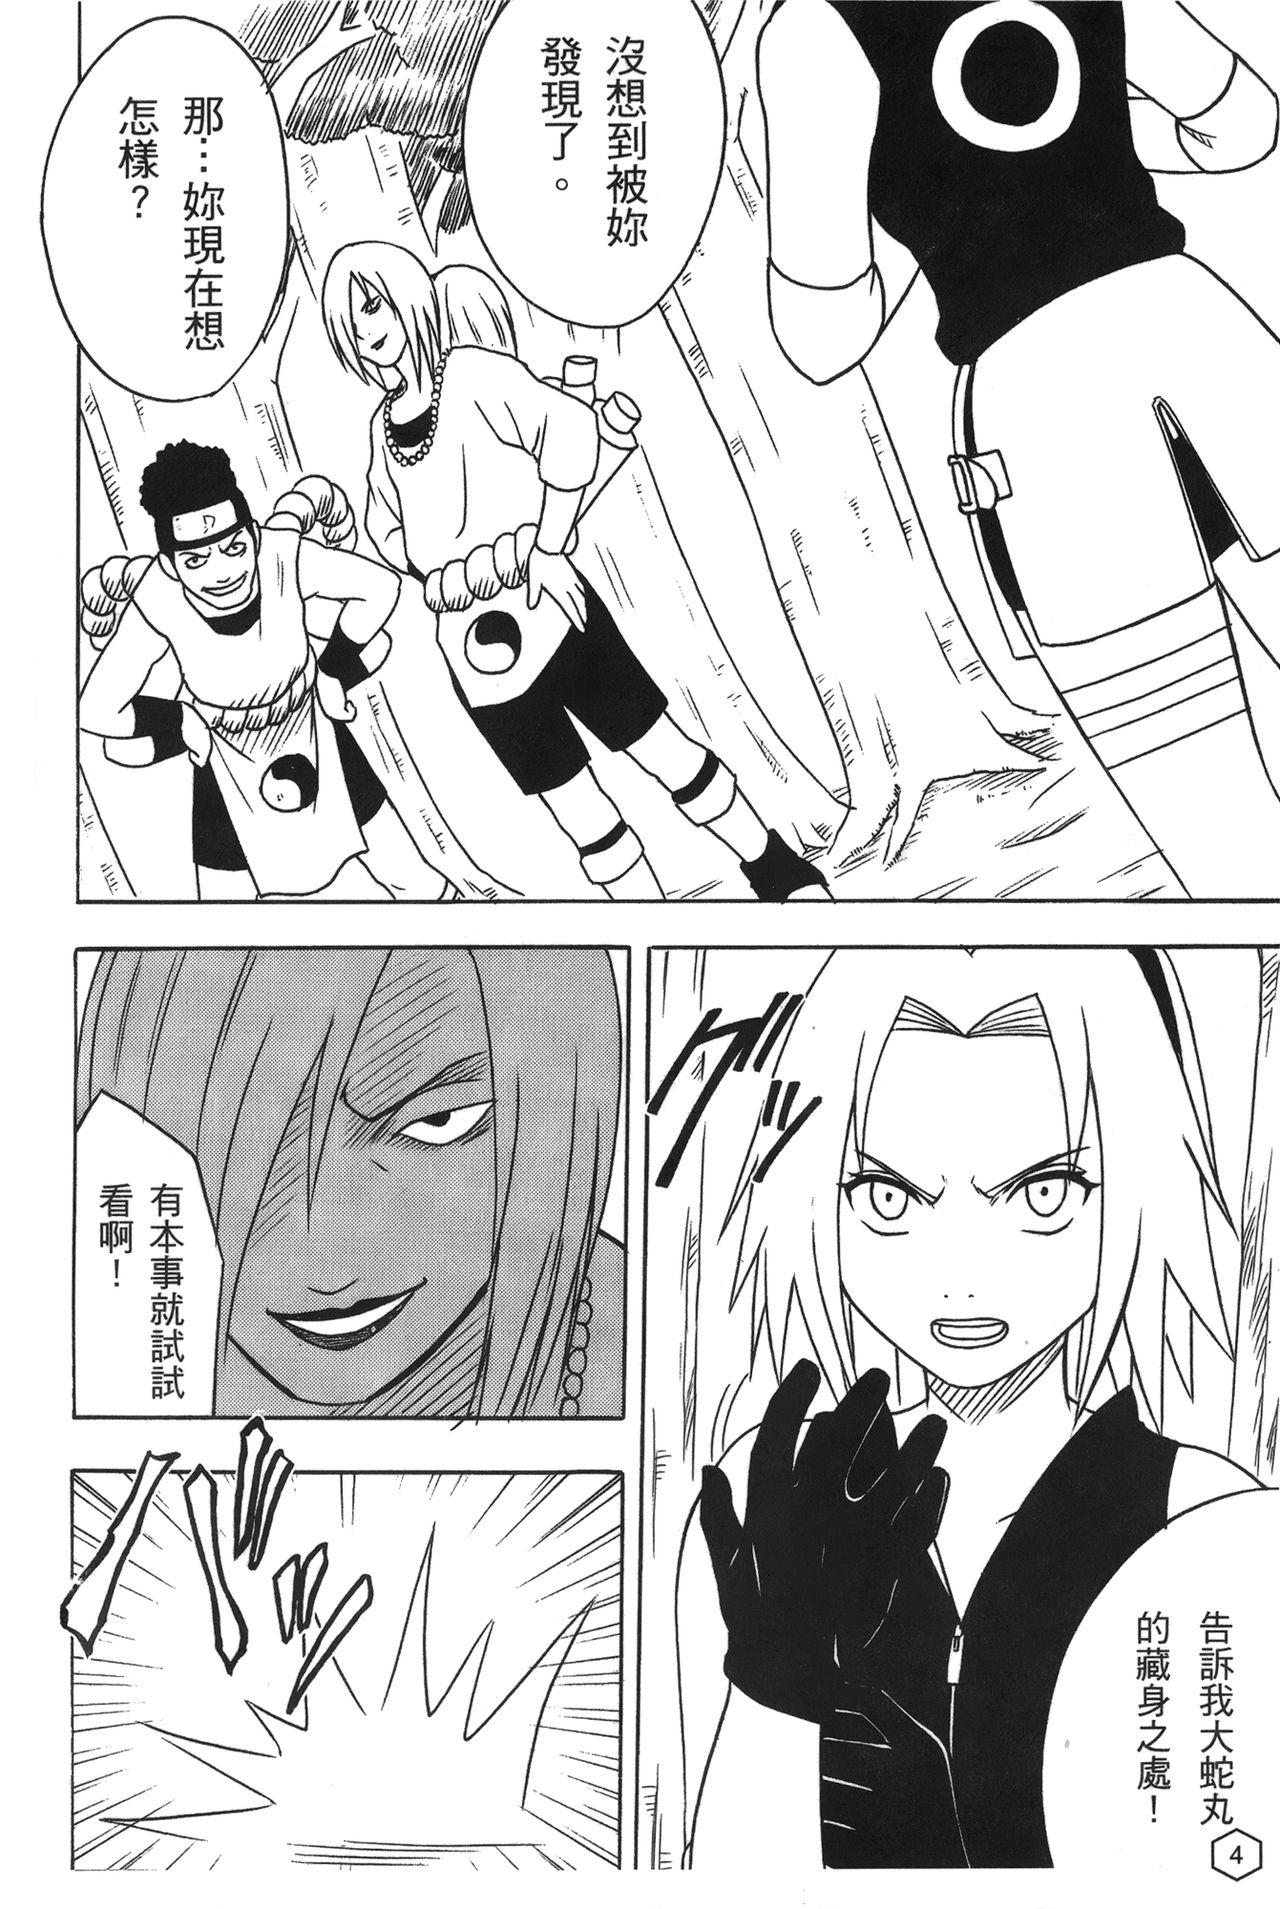 Clit onna hai kaku .inn no Sho 02 - Naruto Busou renkin Face - Page 5